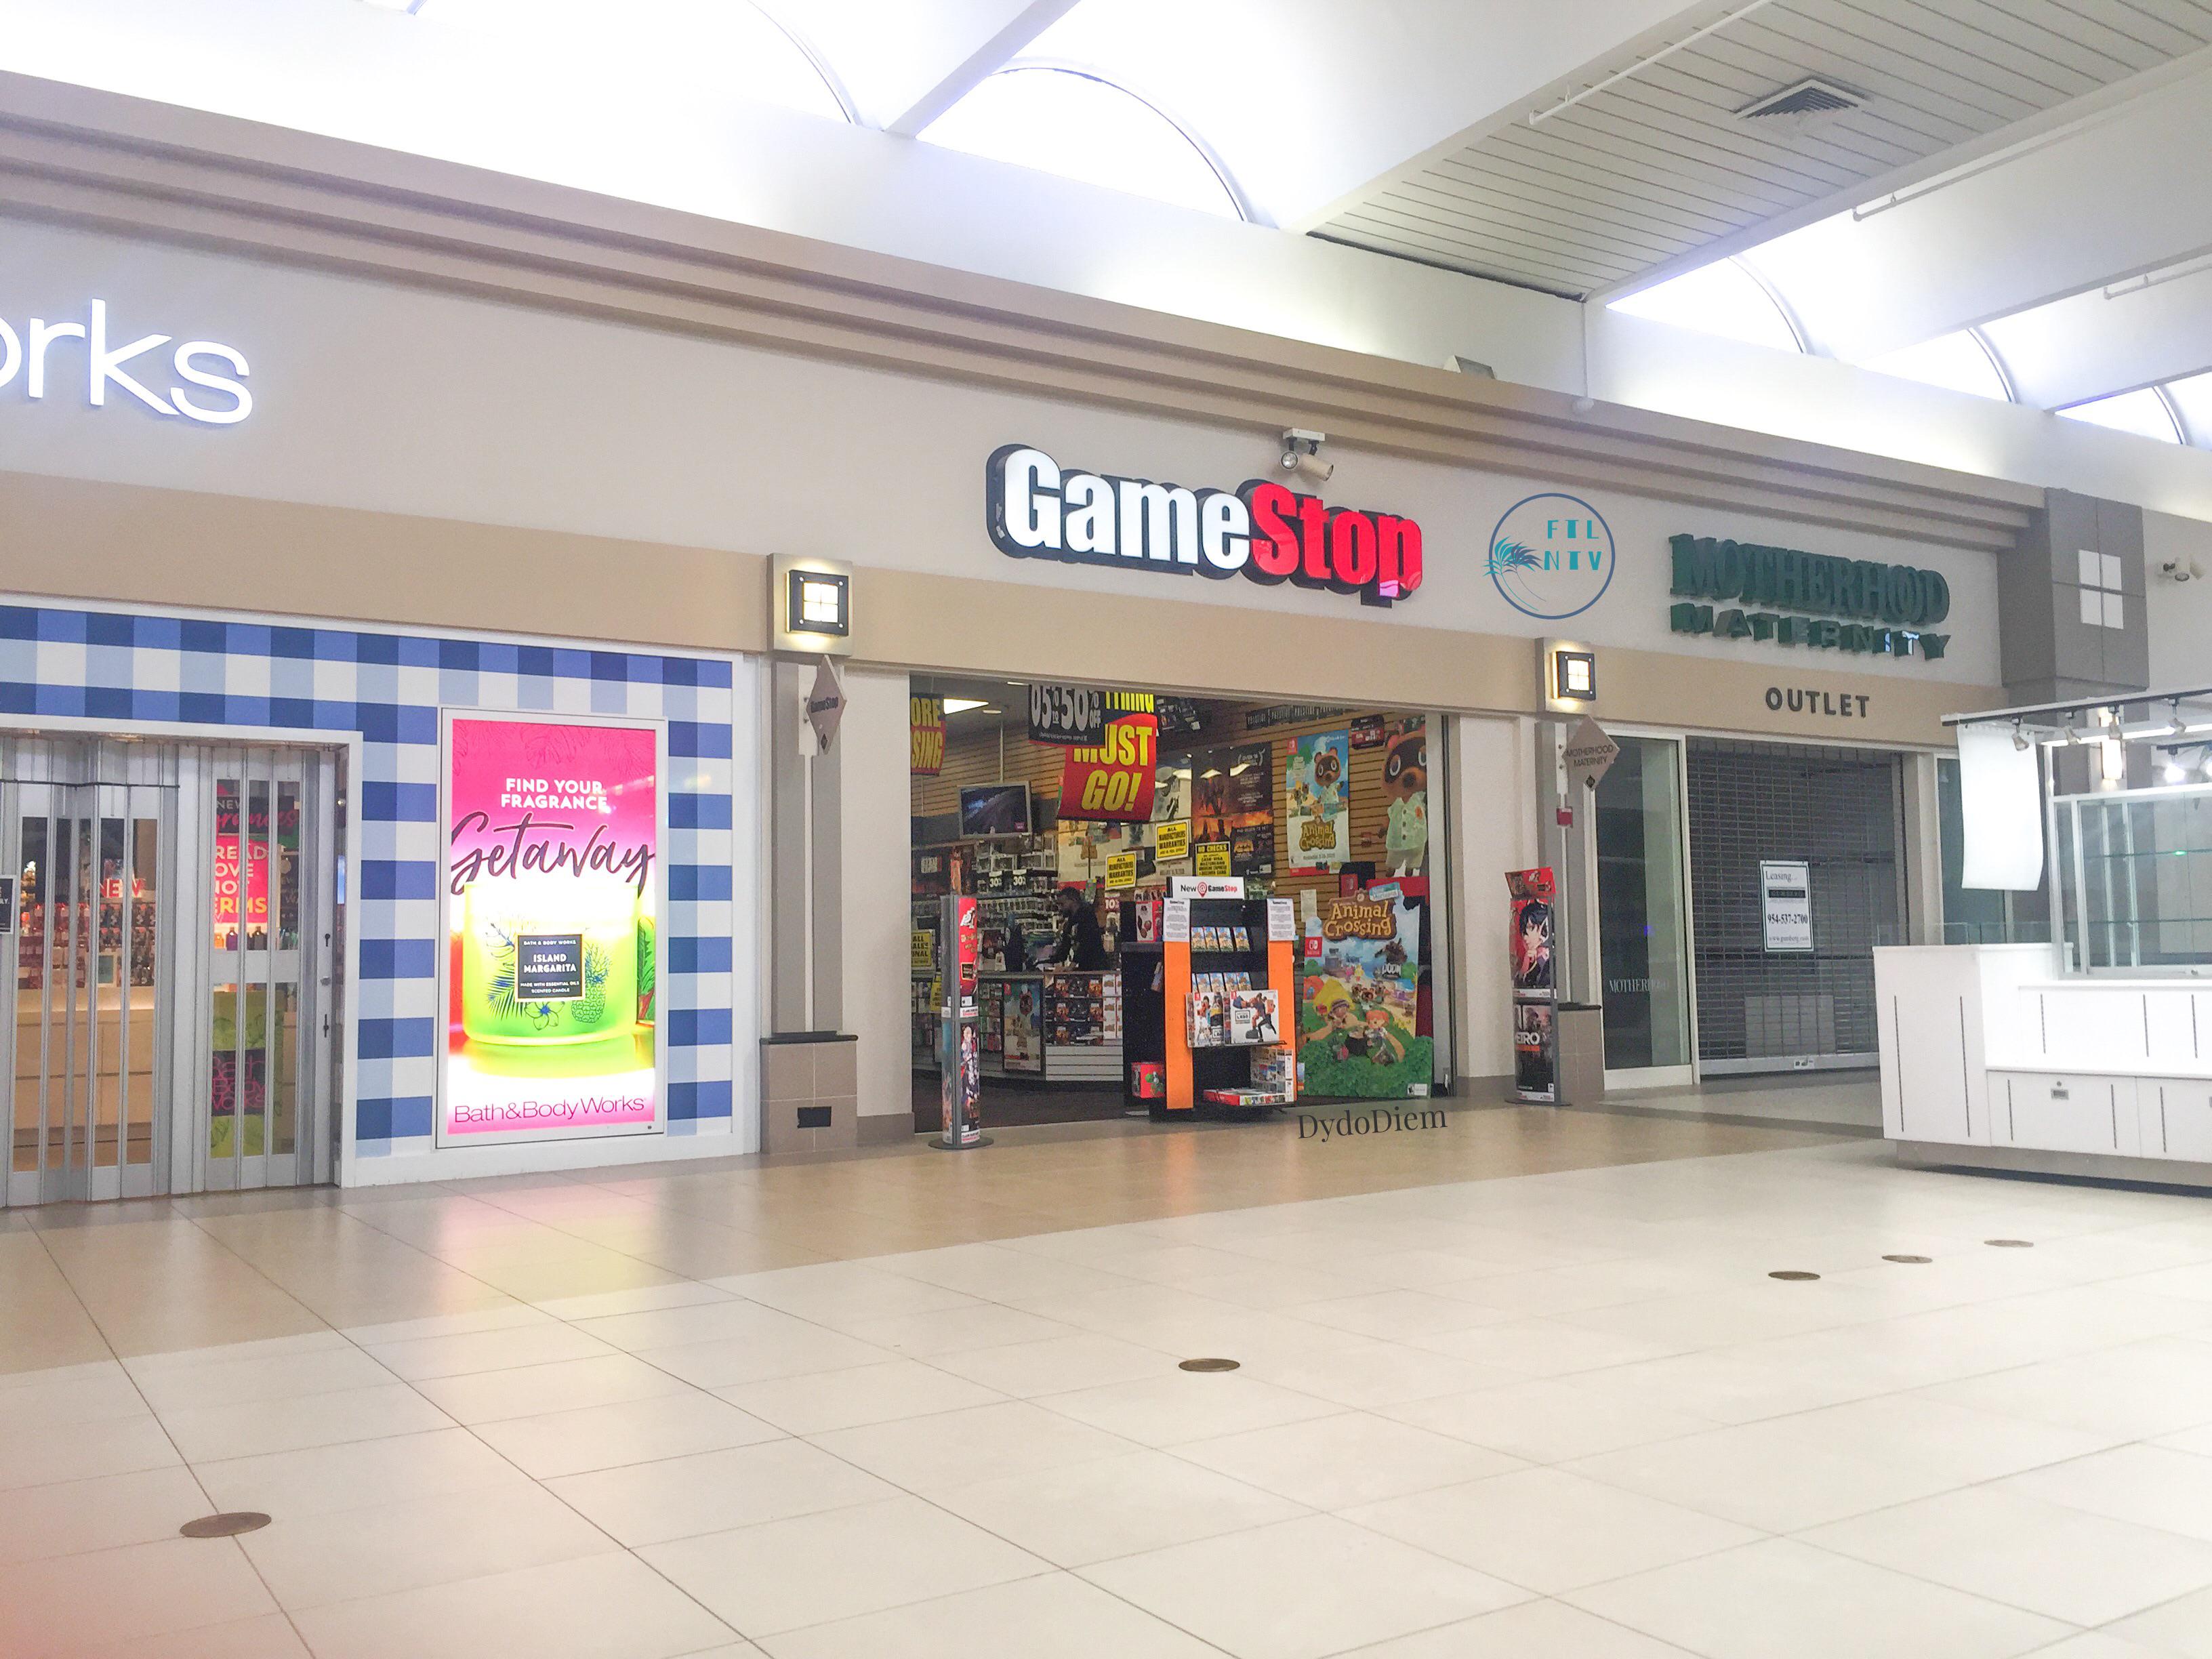 A Gamestop shop